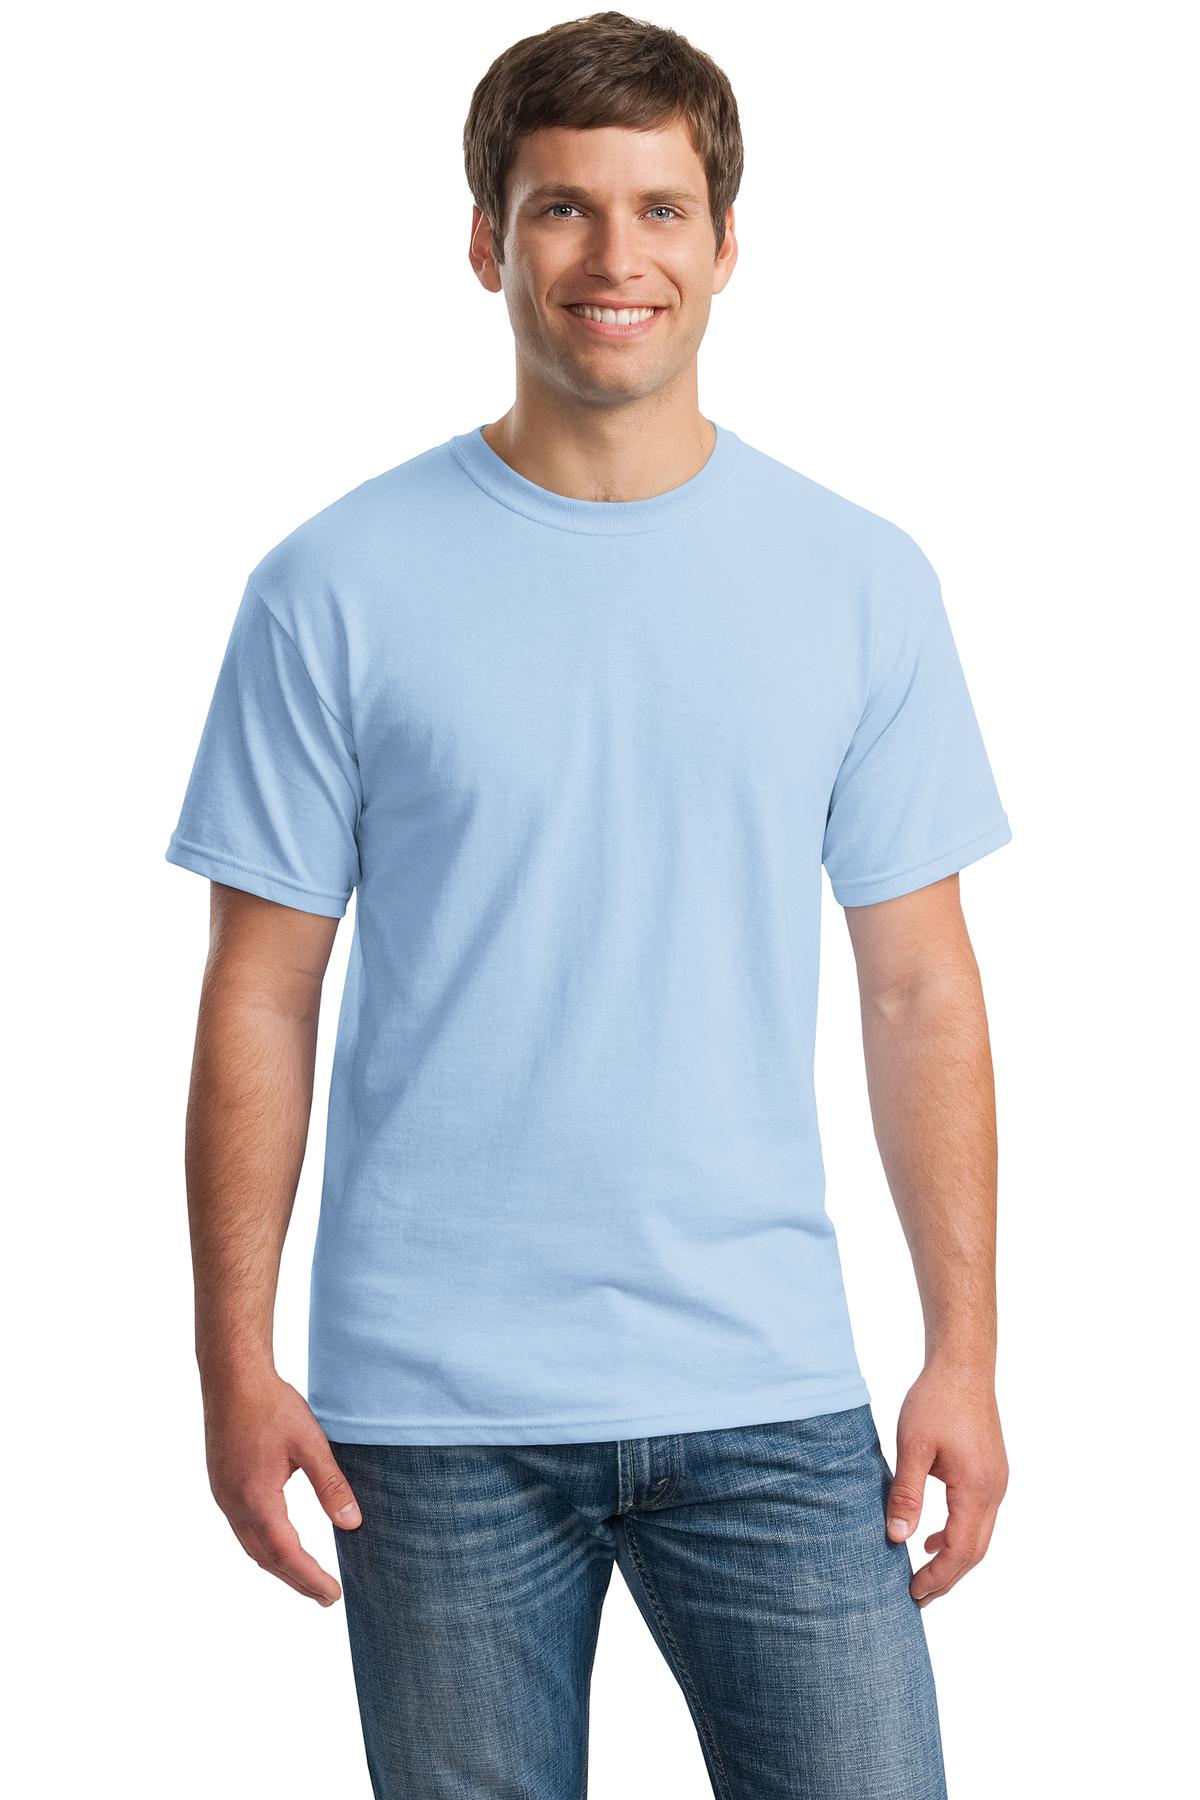 Gildan Men's T-Shirt - Blue - L